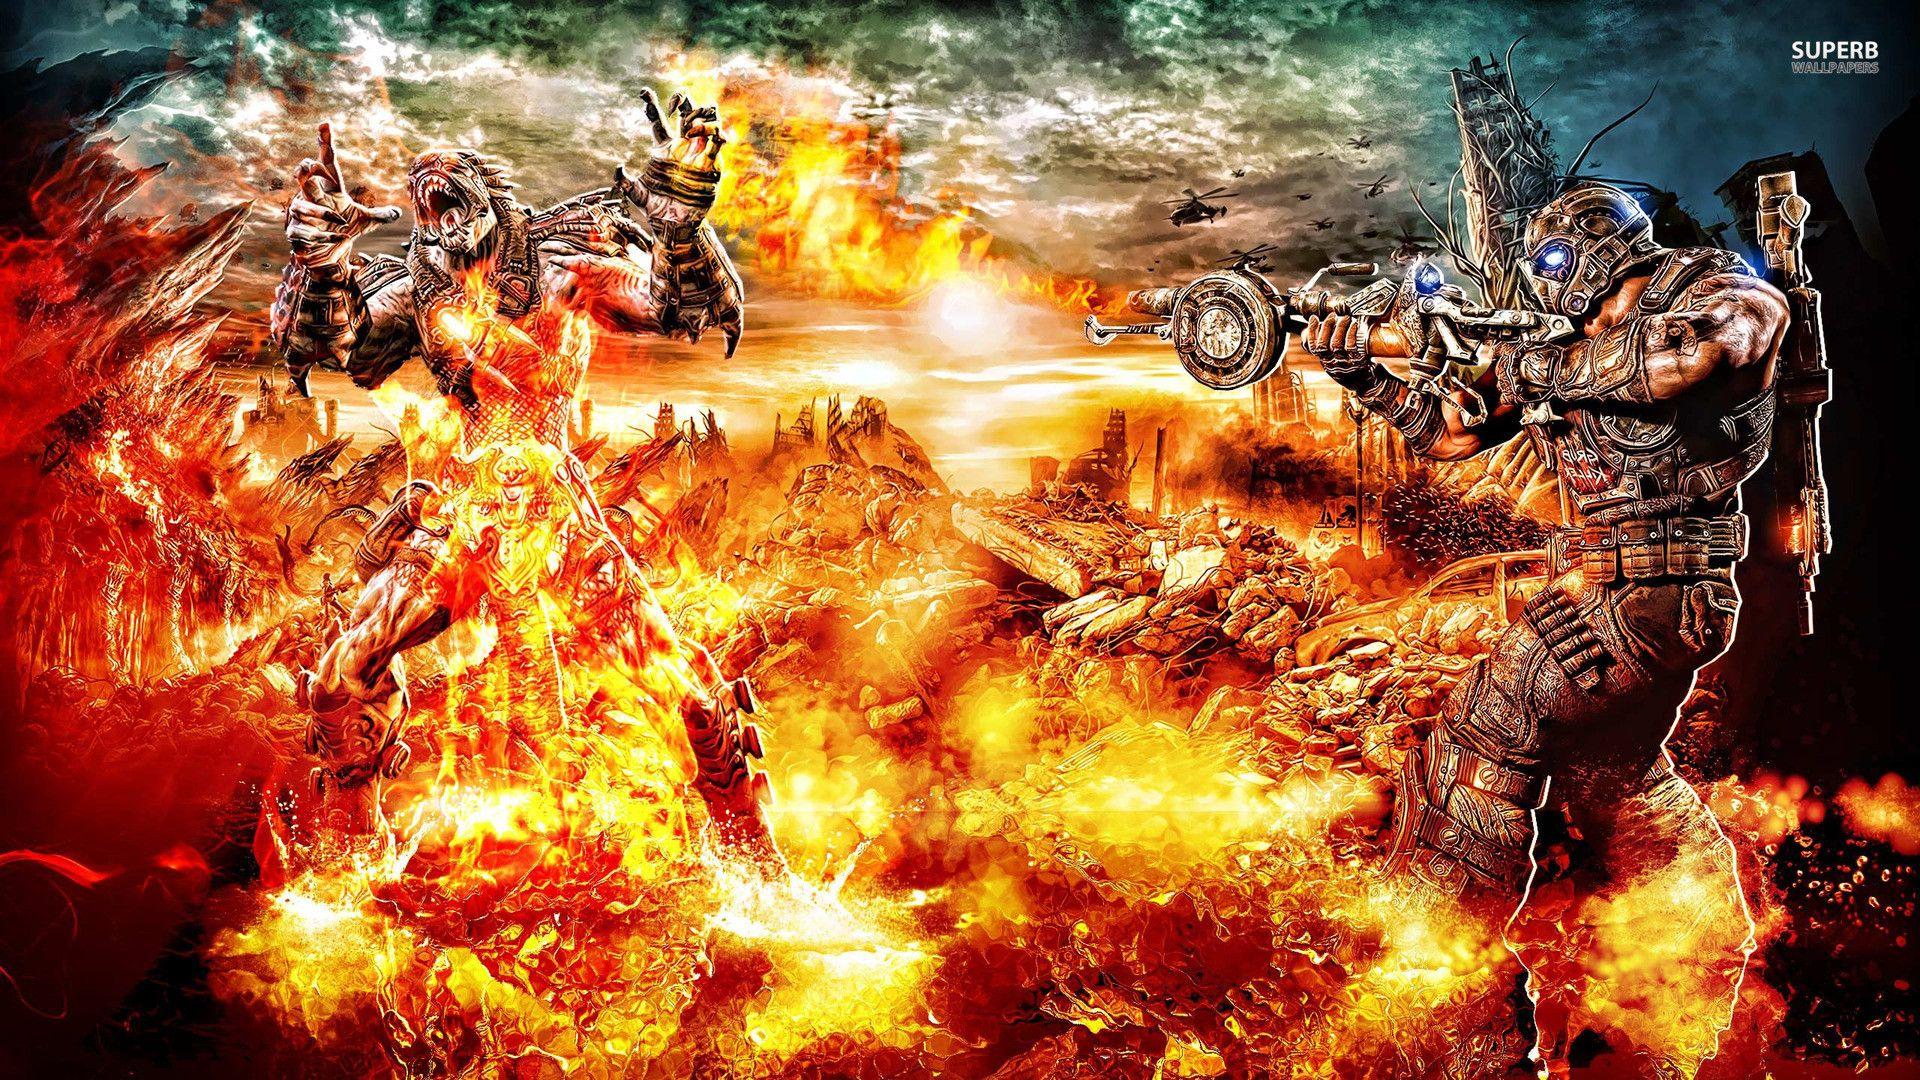 Gears Of War 3 Wallpapers Top Free Gears Of War 3